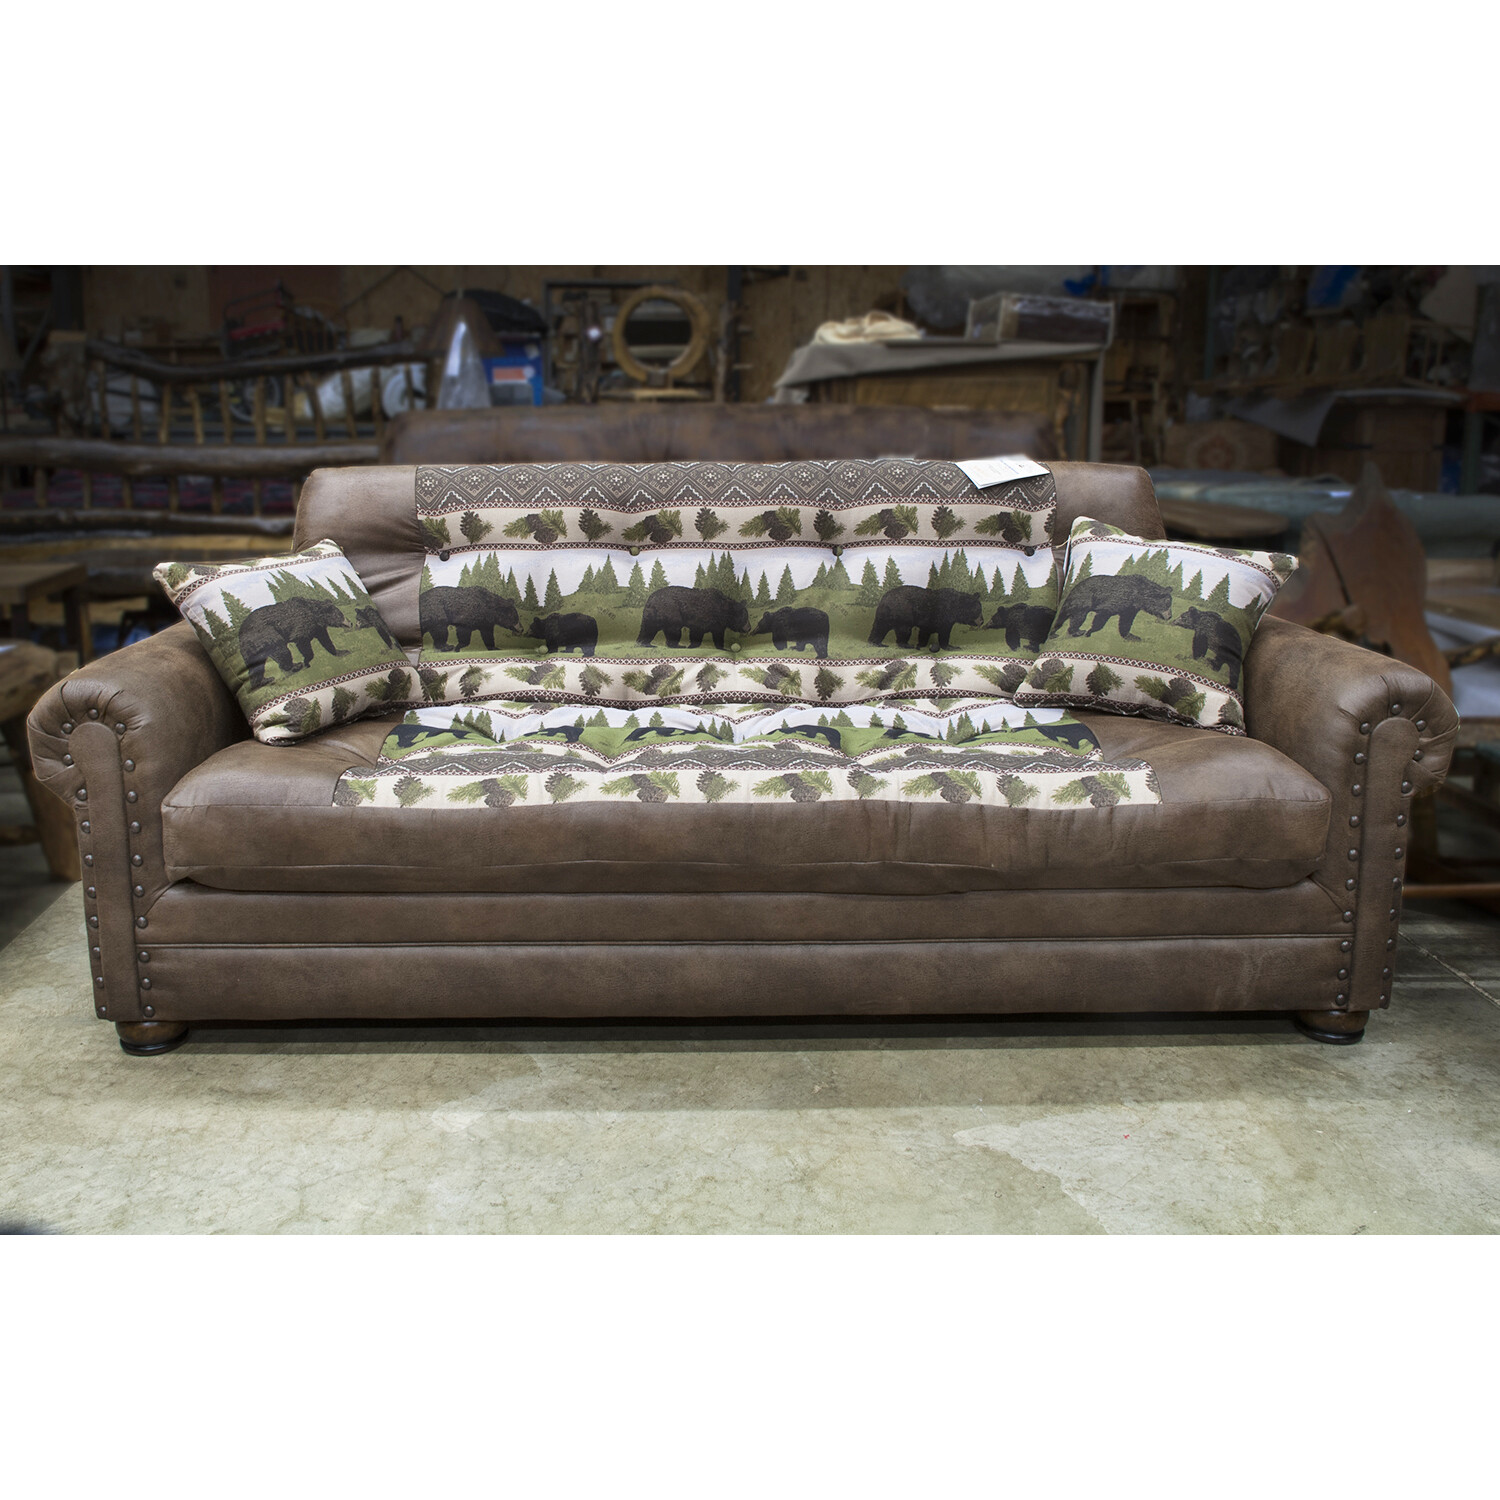 Upholstered Lounger Sofa